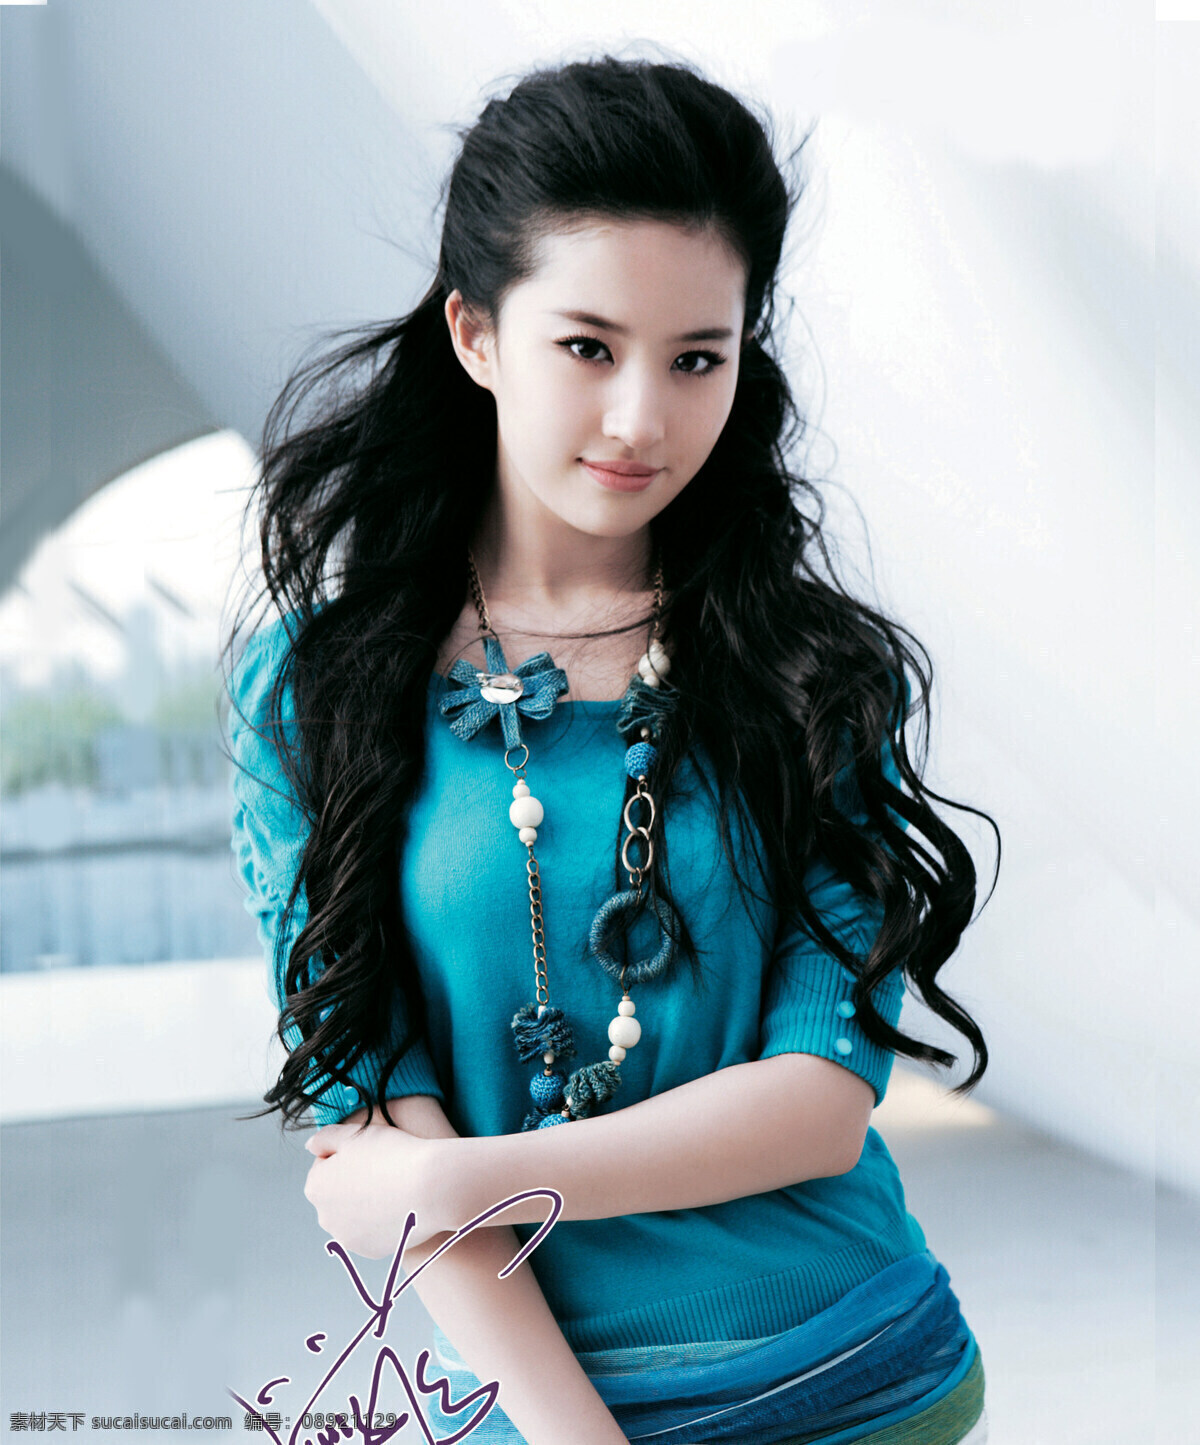 刘亦菲 生活 明星偶像 人物 人物摄影 人物素材 女人 美女 时尚美女 生活人物 职业人物 模特 明星图片 人物图片